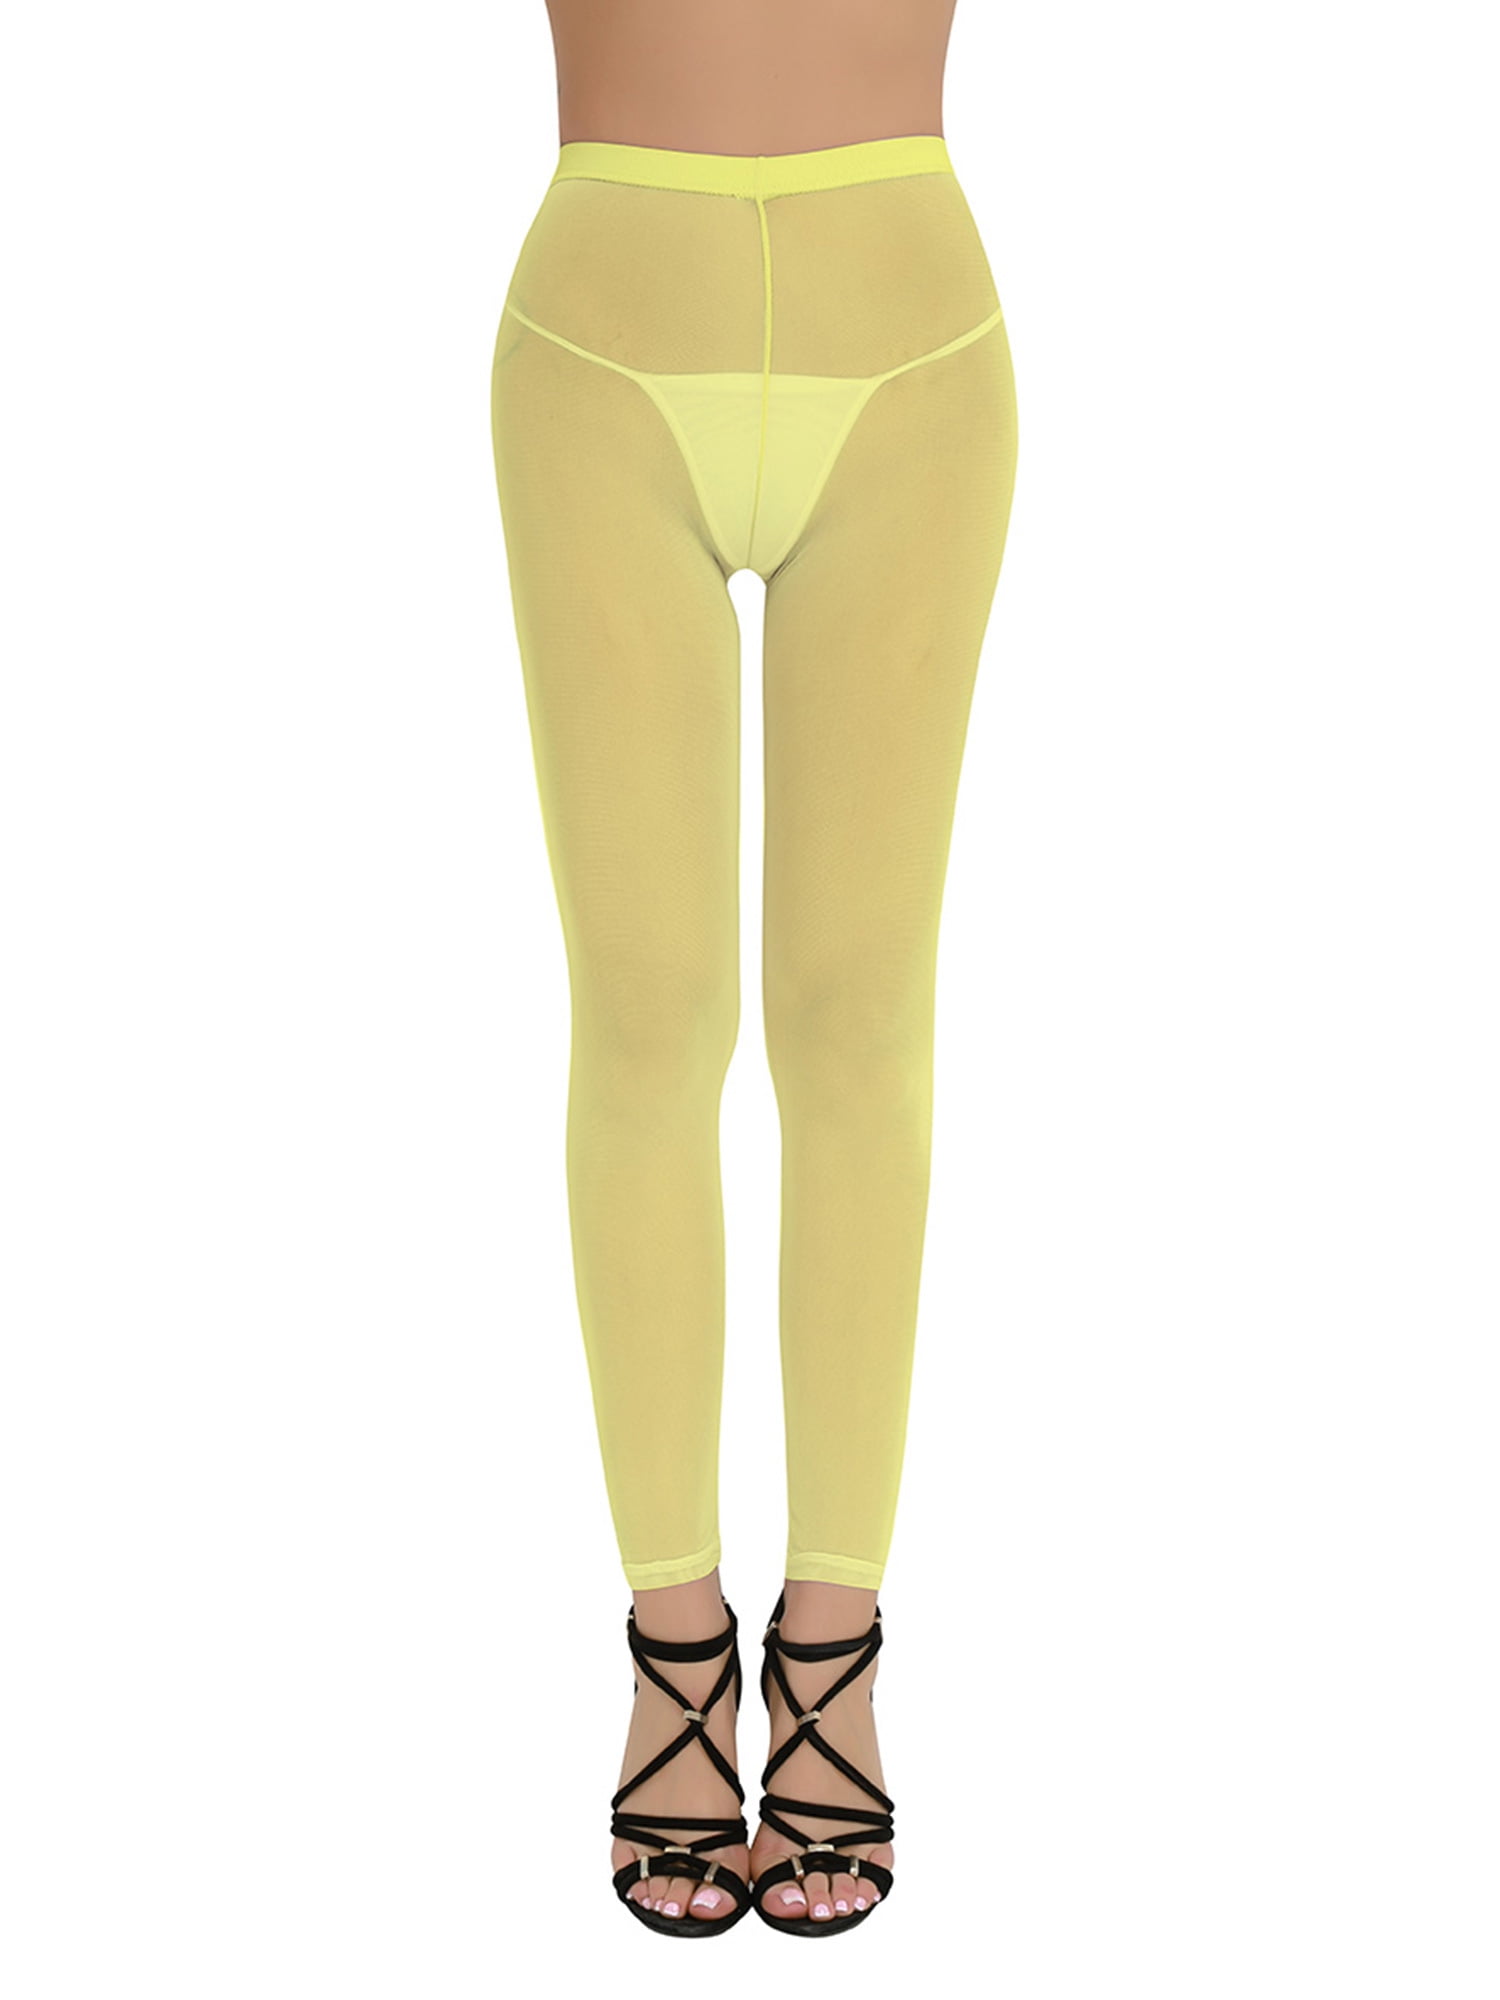 YIWEI Womens Check Plaid High Waist Leggings Tight Slim Elastic Pants  Trousers Gray 2XL - Walmart.com